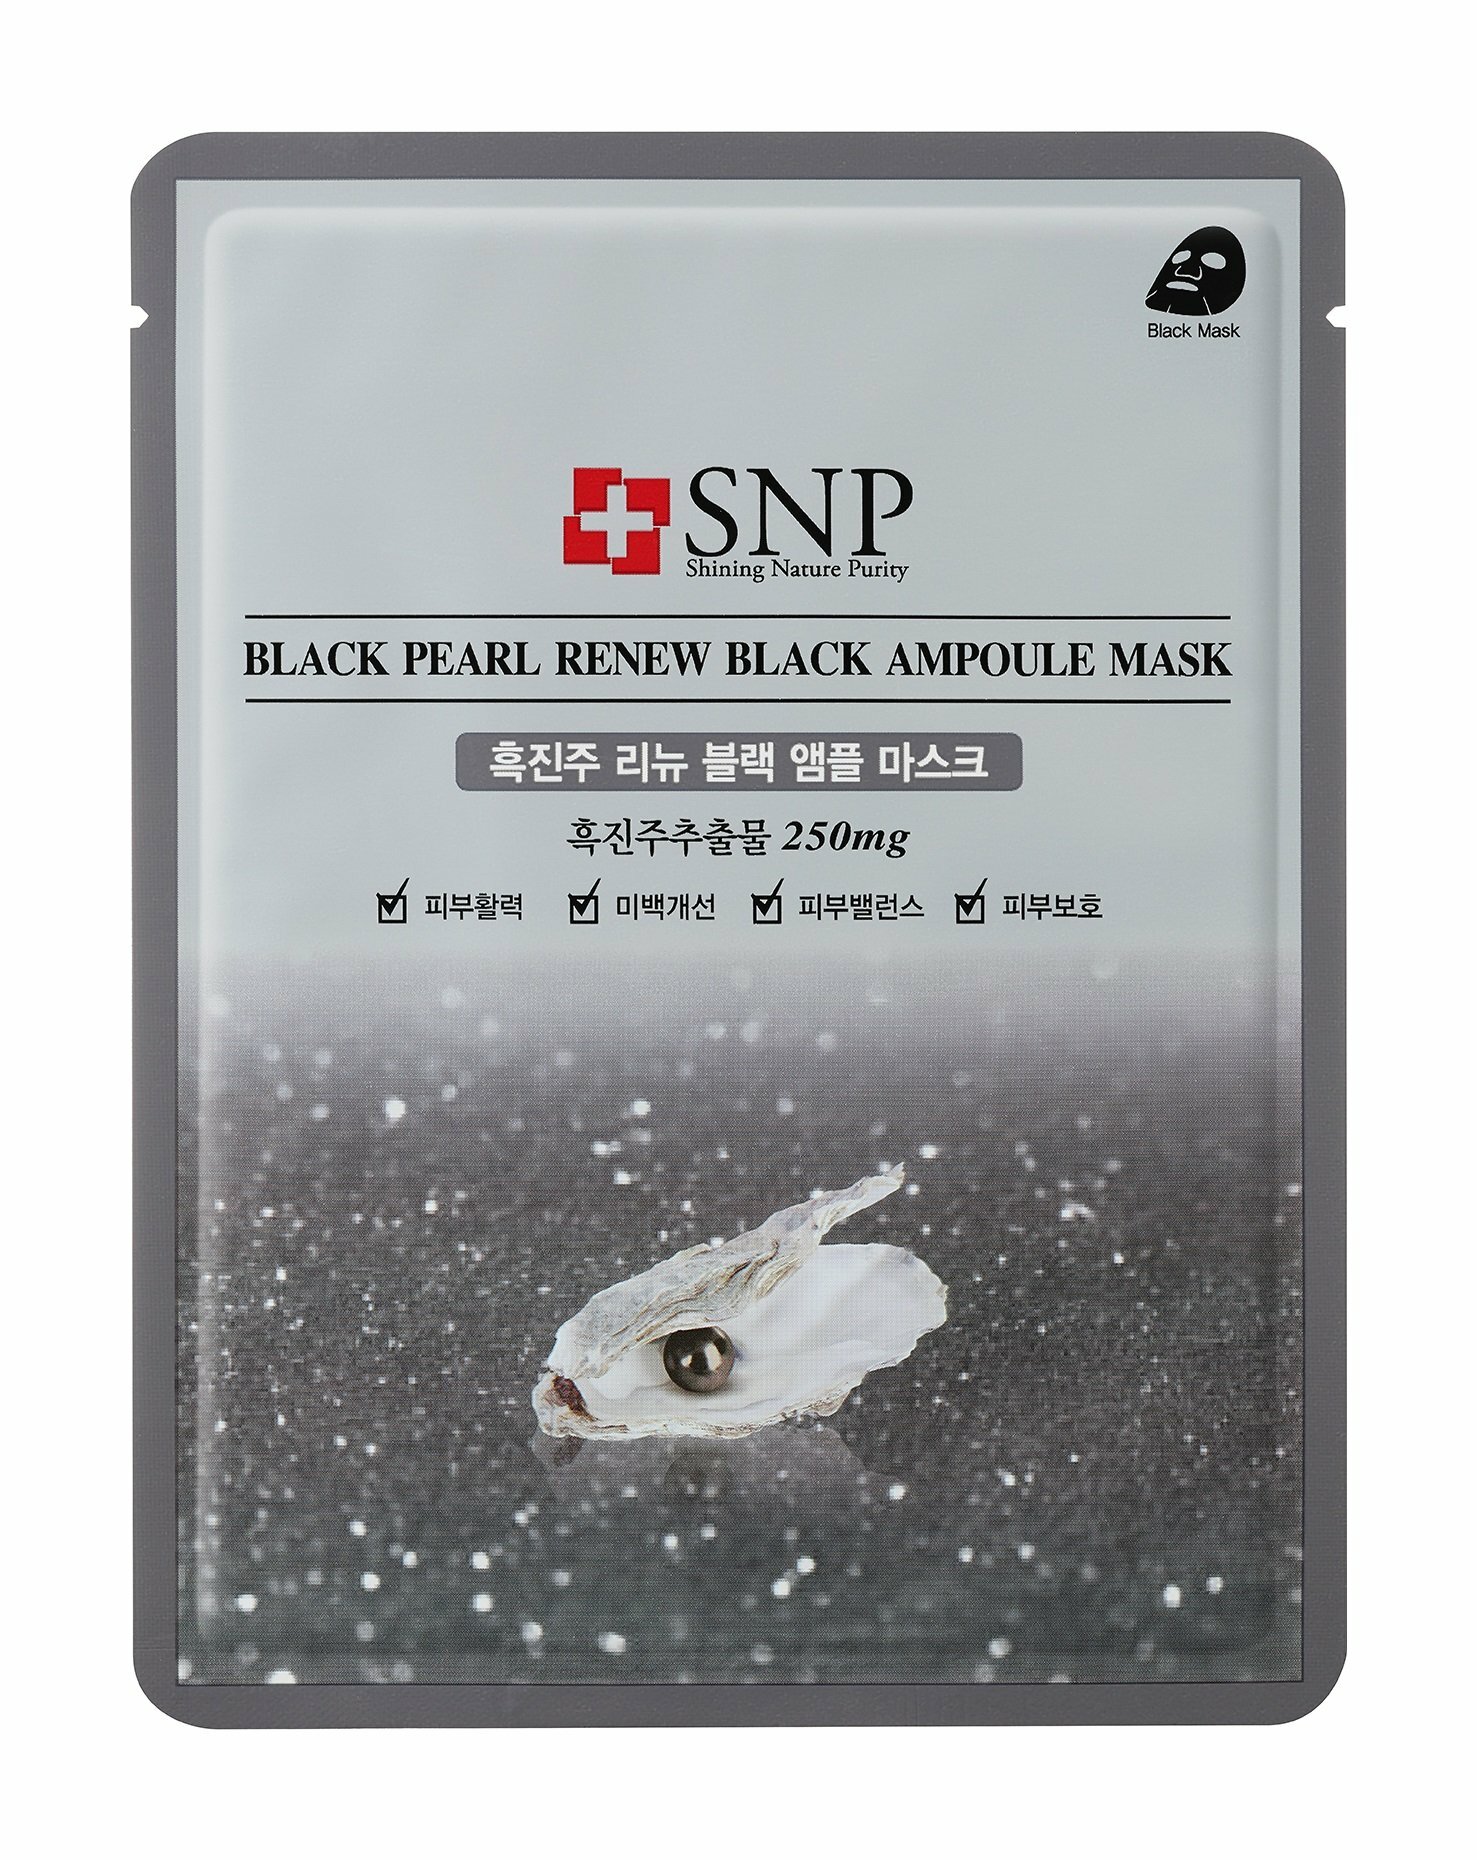 Black Pearl Renew Black Маска тканевая для лица с экстрактом черного жемчуга обновляющая, 25 мл